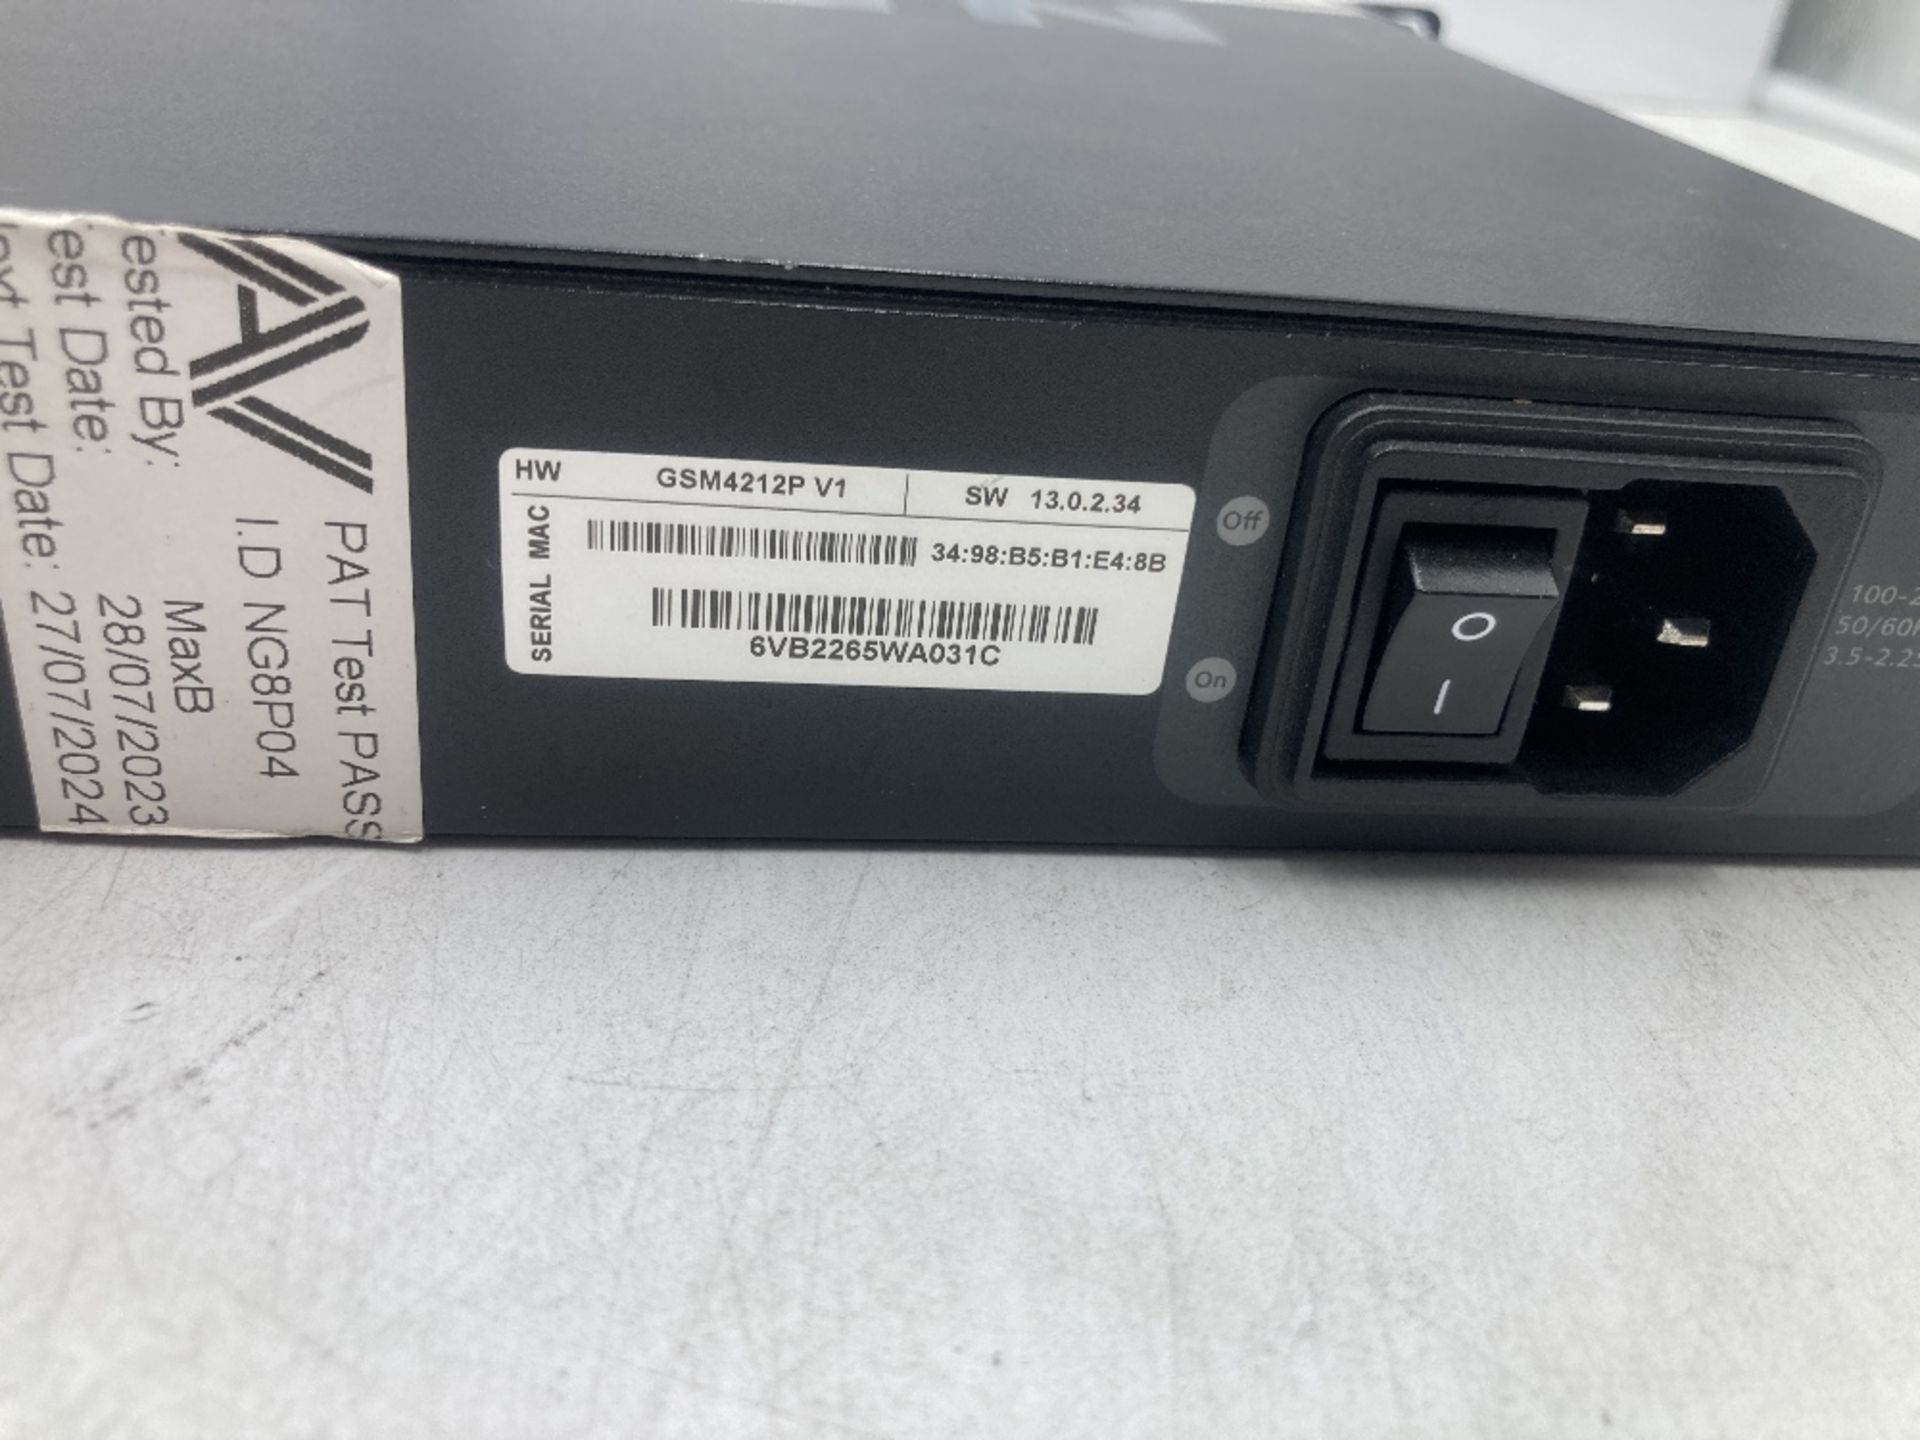 Netgear AV Line M4250-10G2F - 10 Port Gigabit PoE+ Managed Network Switch - Image 5 of 5